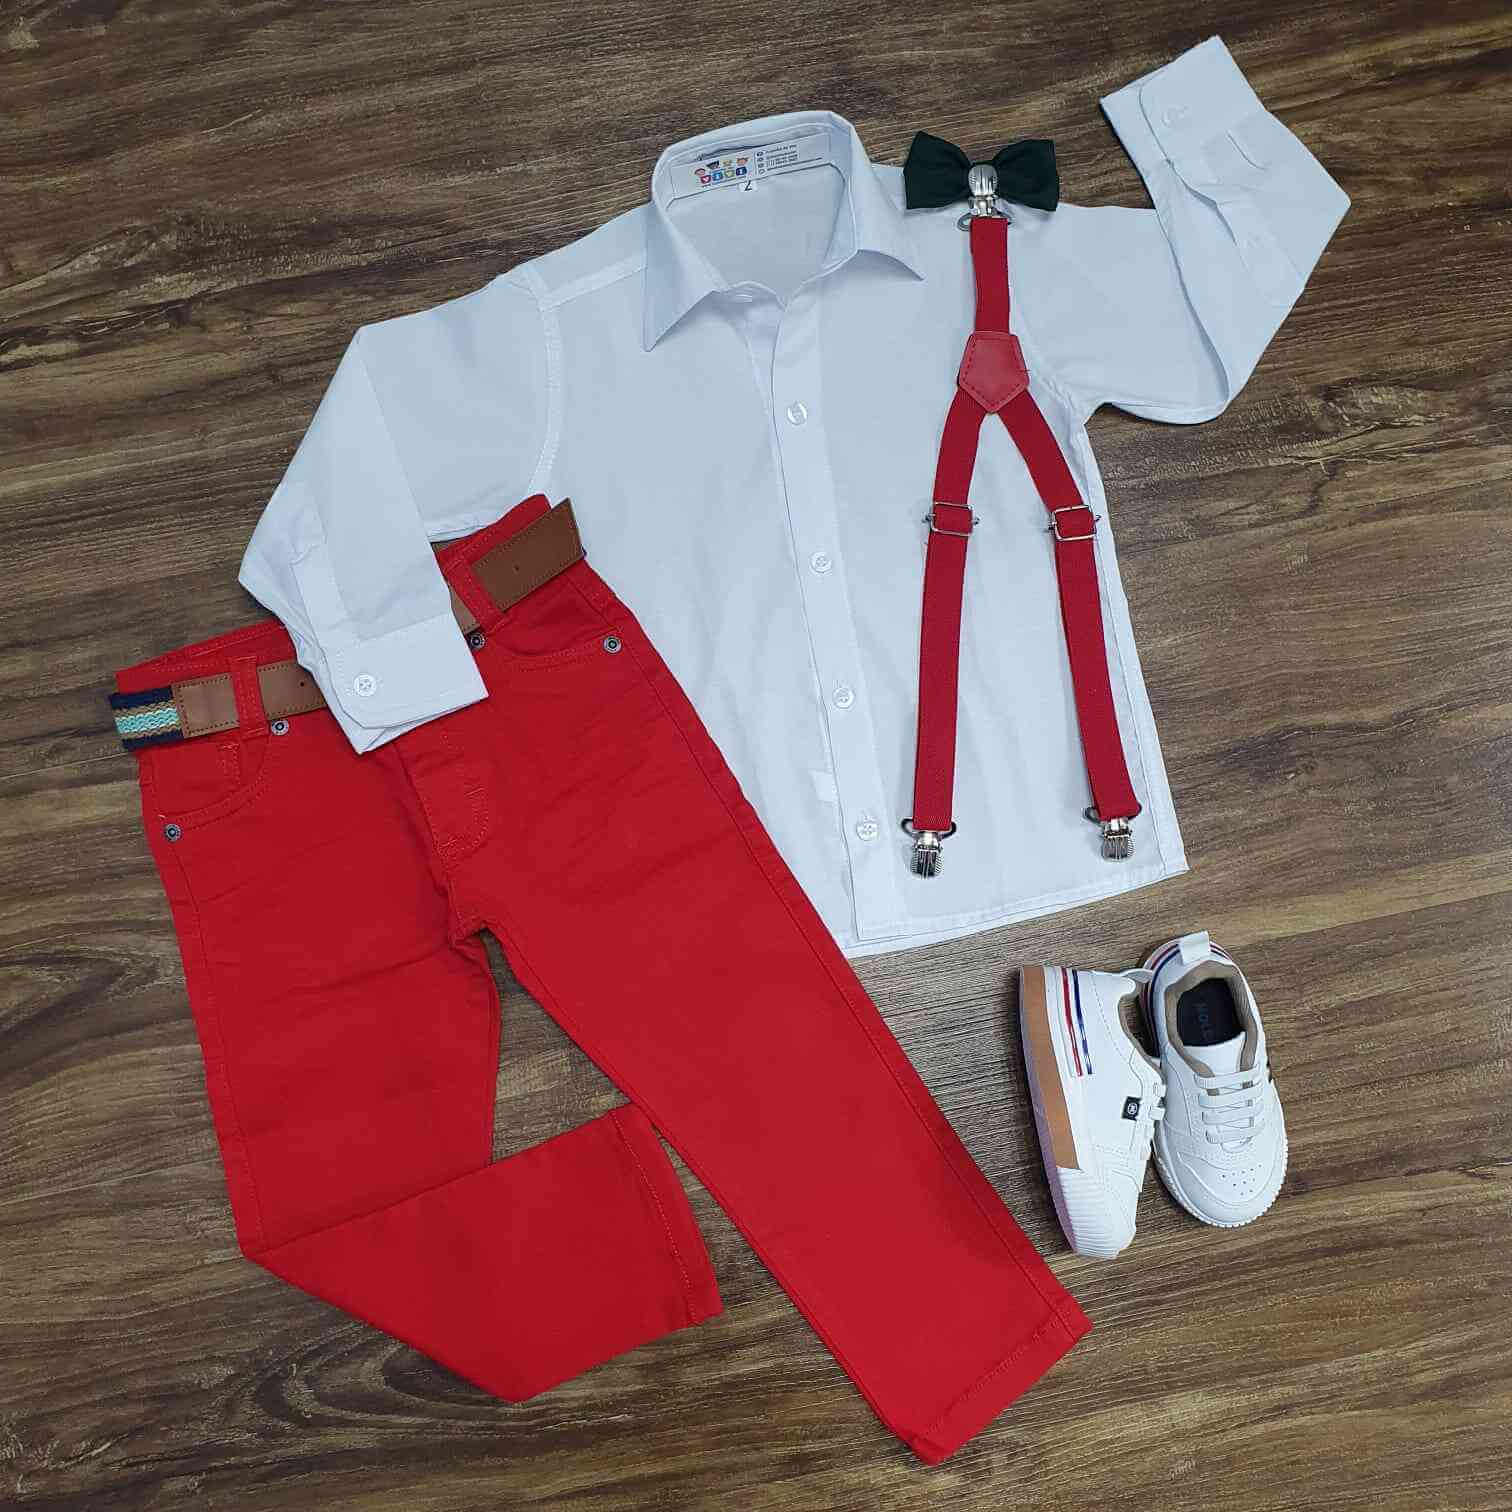 Camisa Manga Longa Branca com Calça Vermelha Infantil